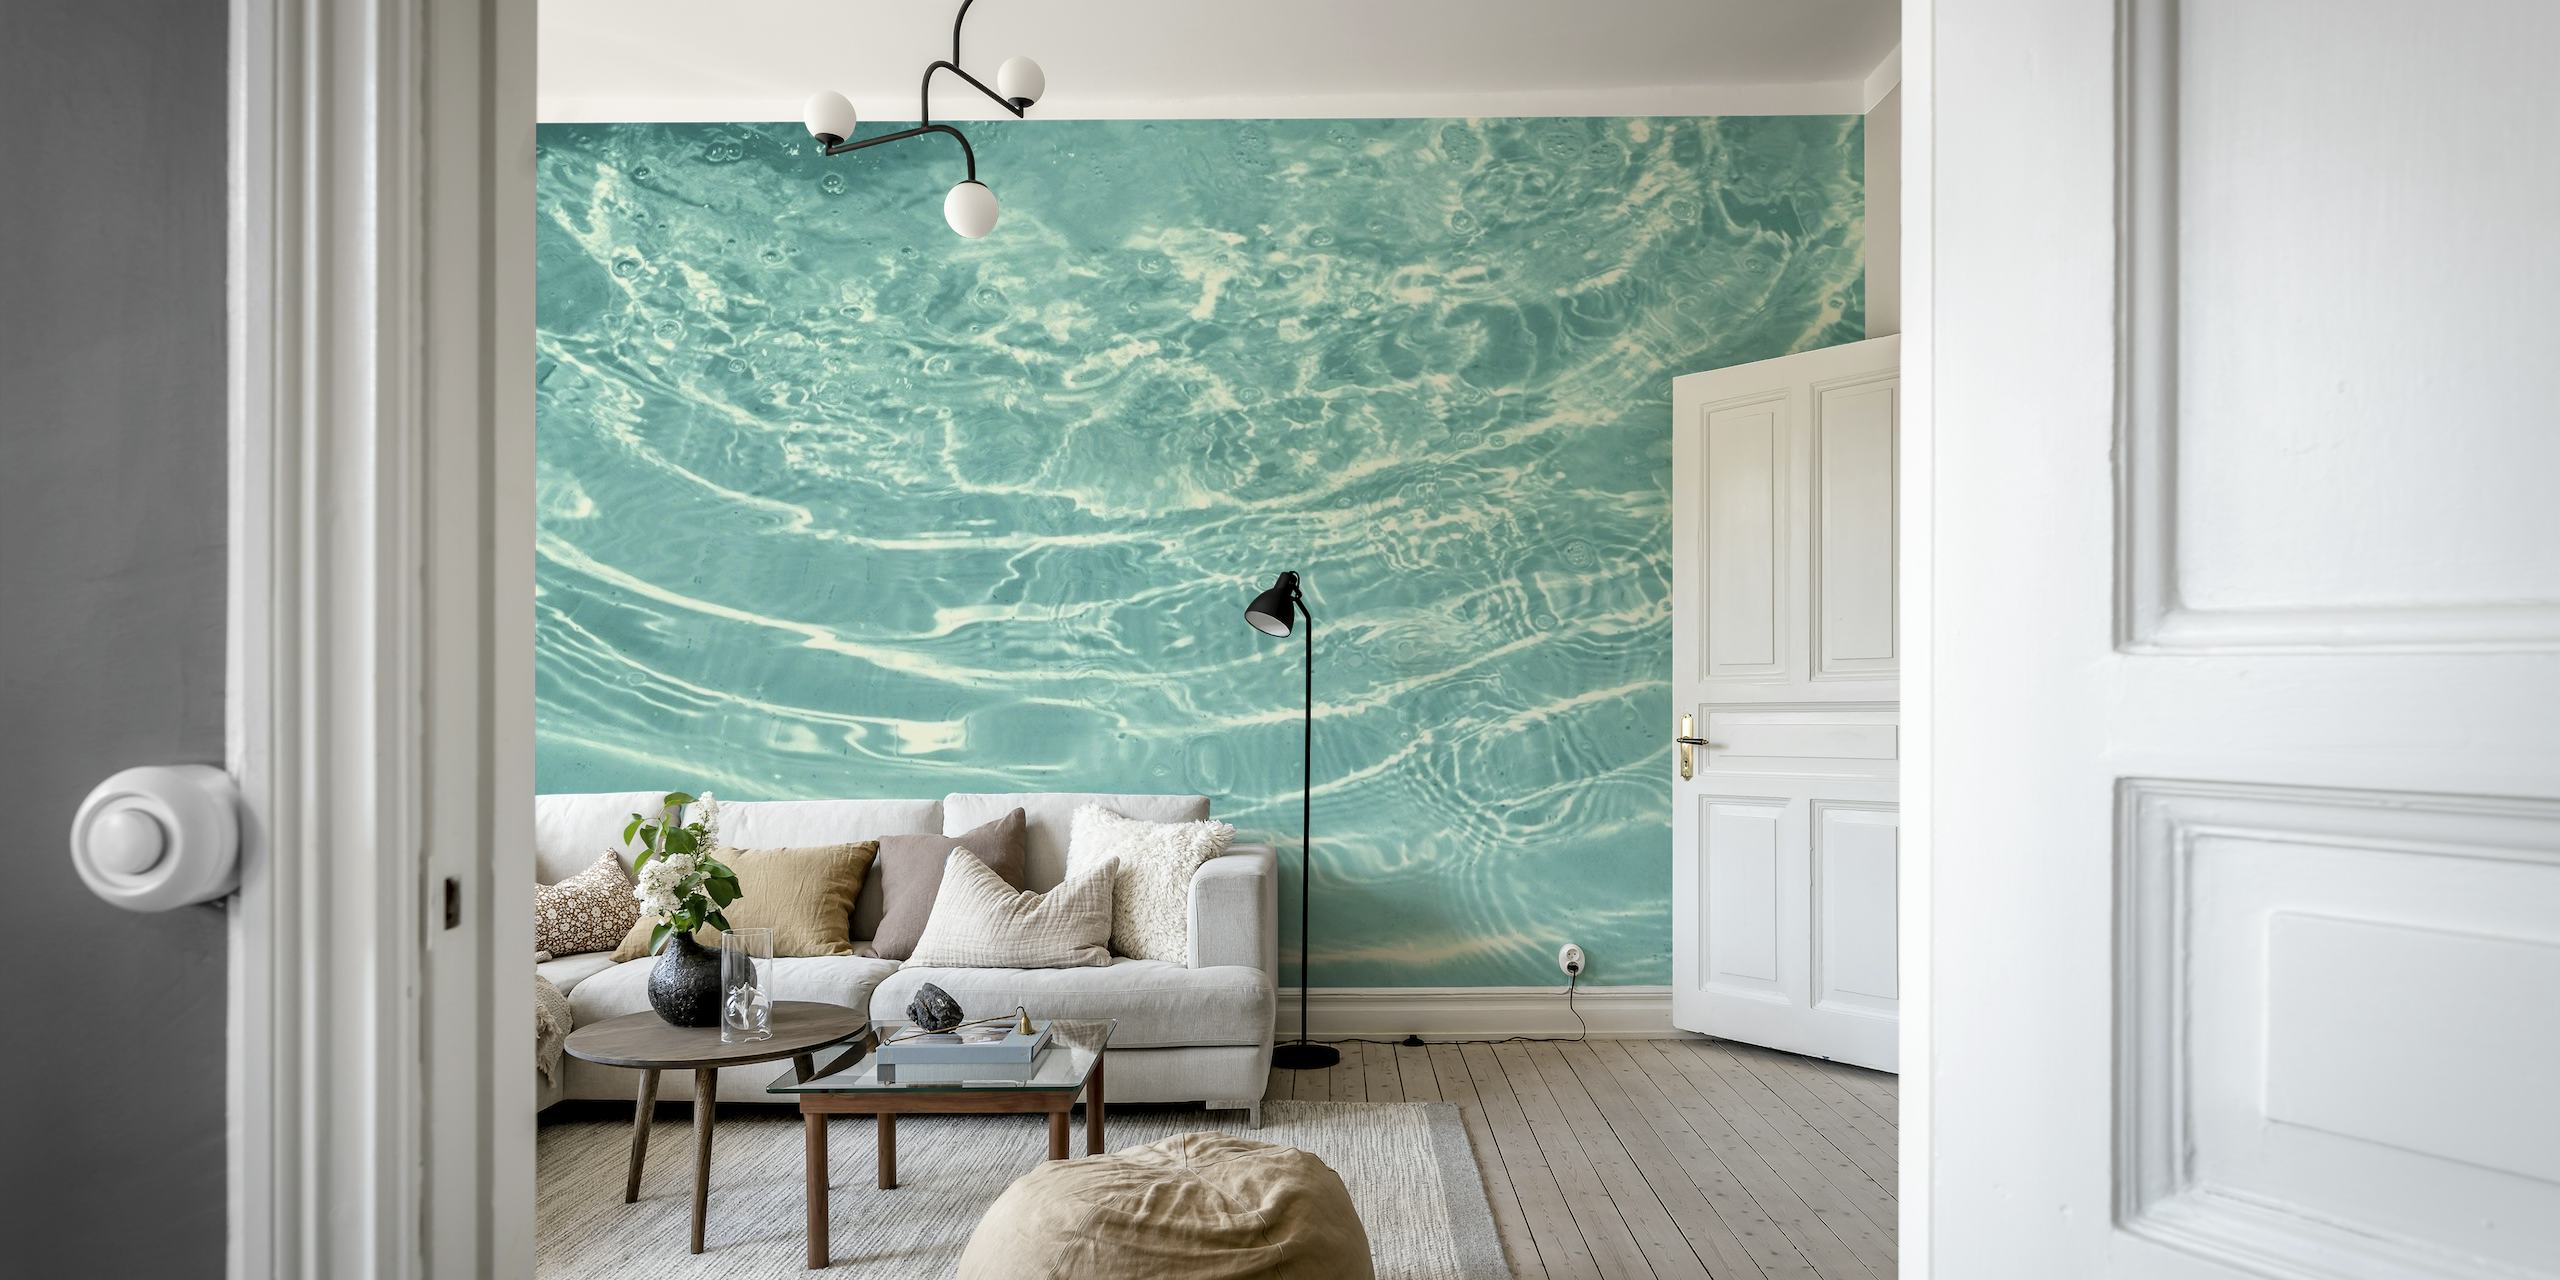 Papier peint mural d'eau turquoise avec de douces ondulations créant un effet apaisant.